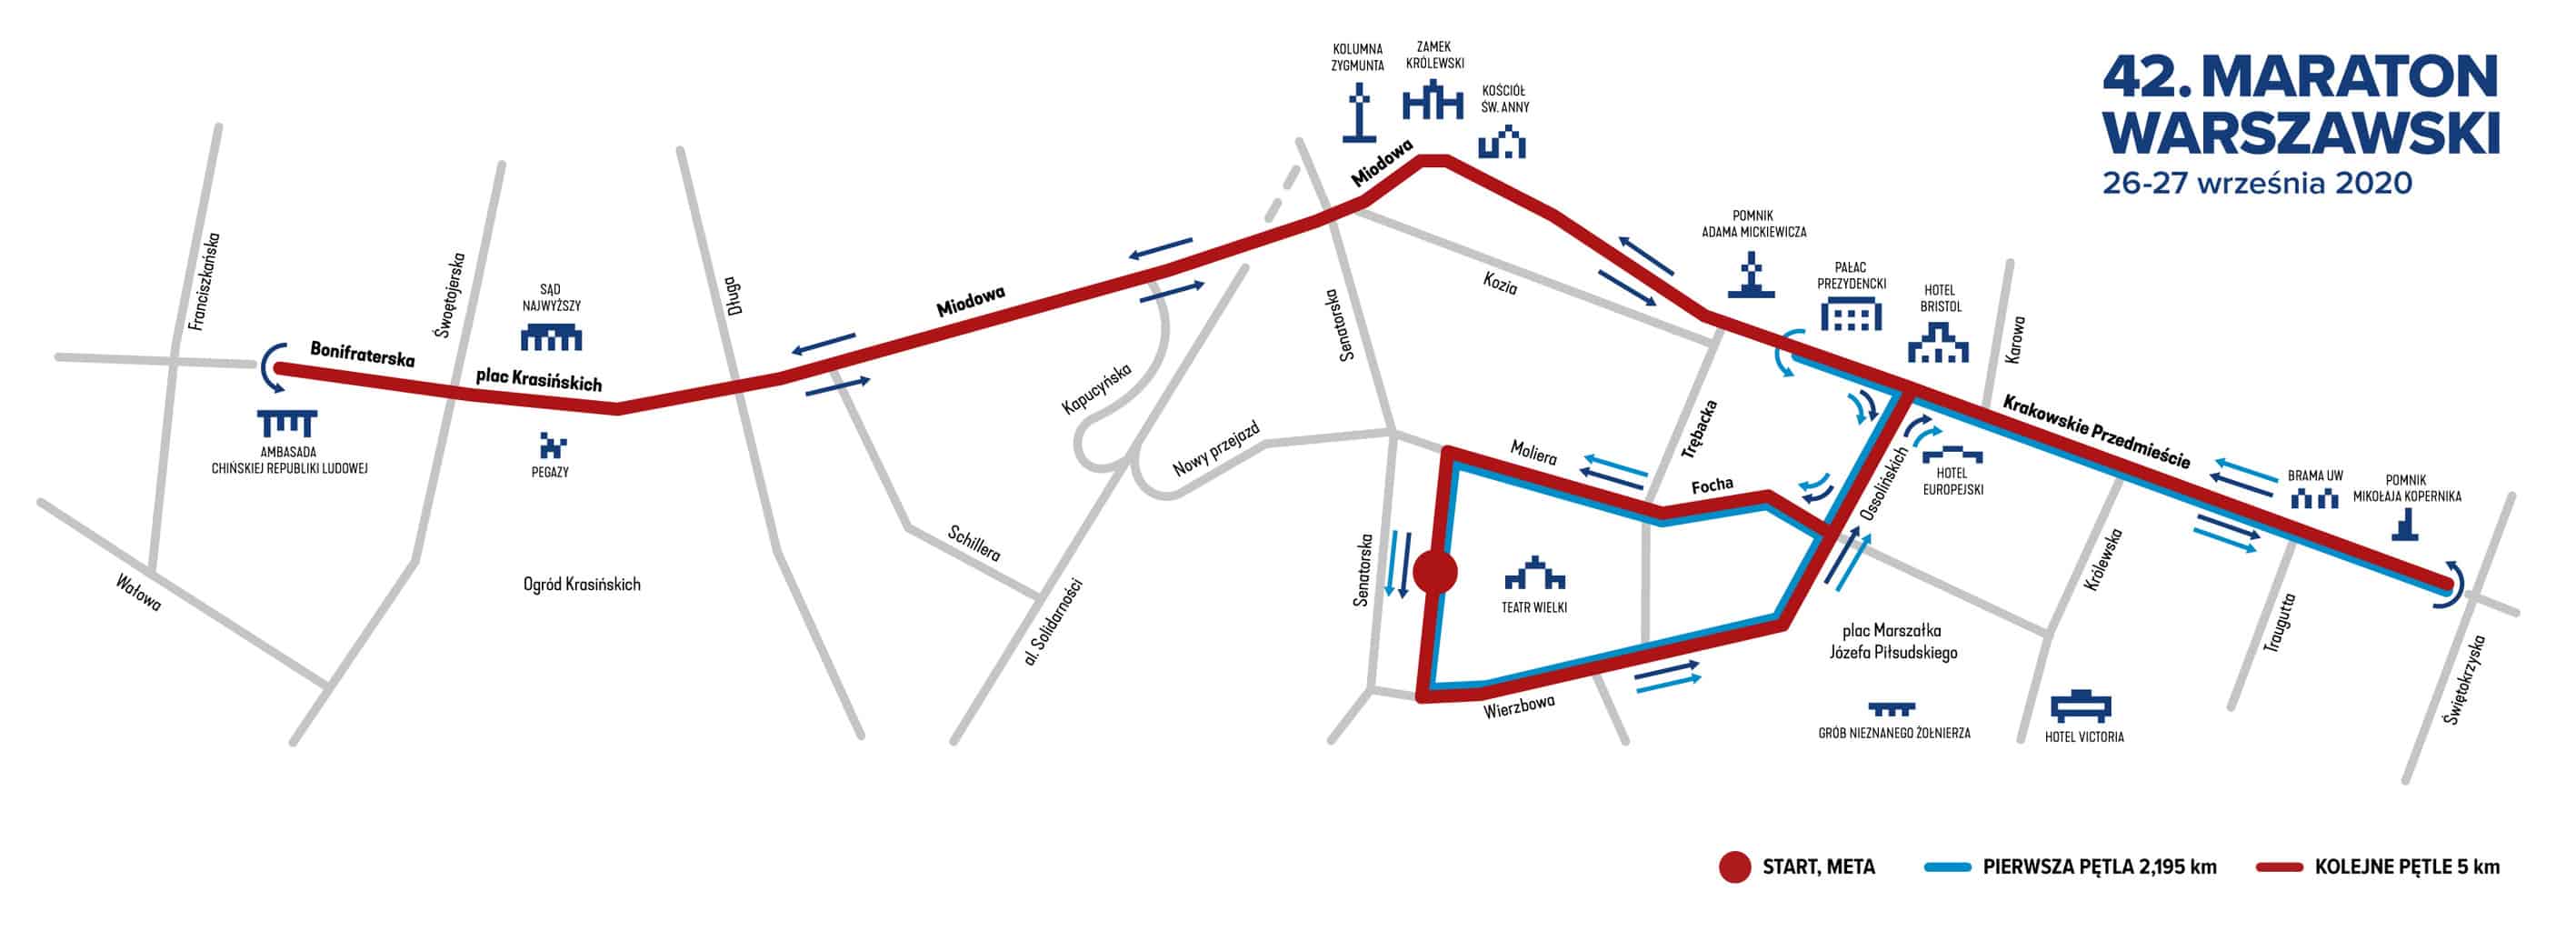 Warsaw Marathon 2020 Poland Map